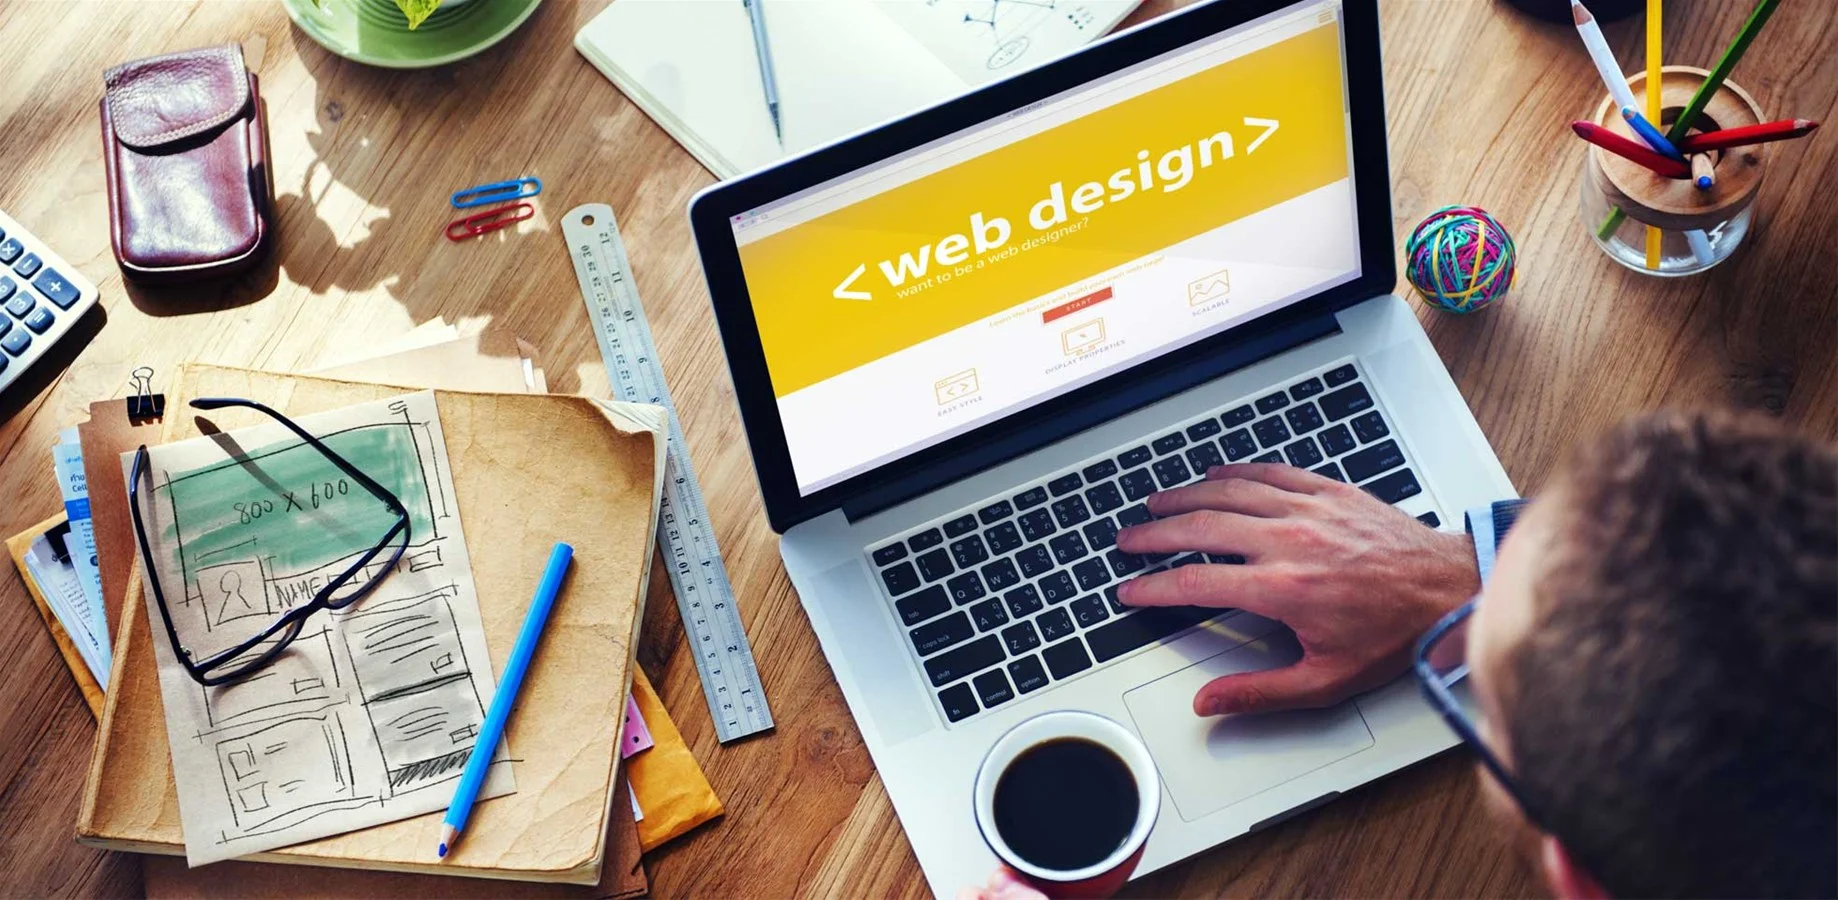 Việc làm thiết kế web được đánh giá rất tiềm năng trên thị trường tuyển dụng hiện nay